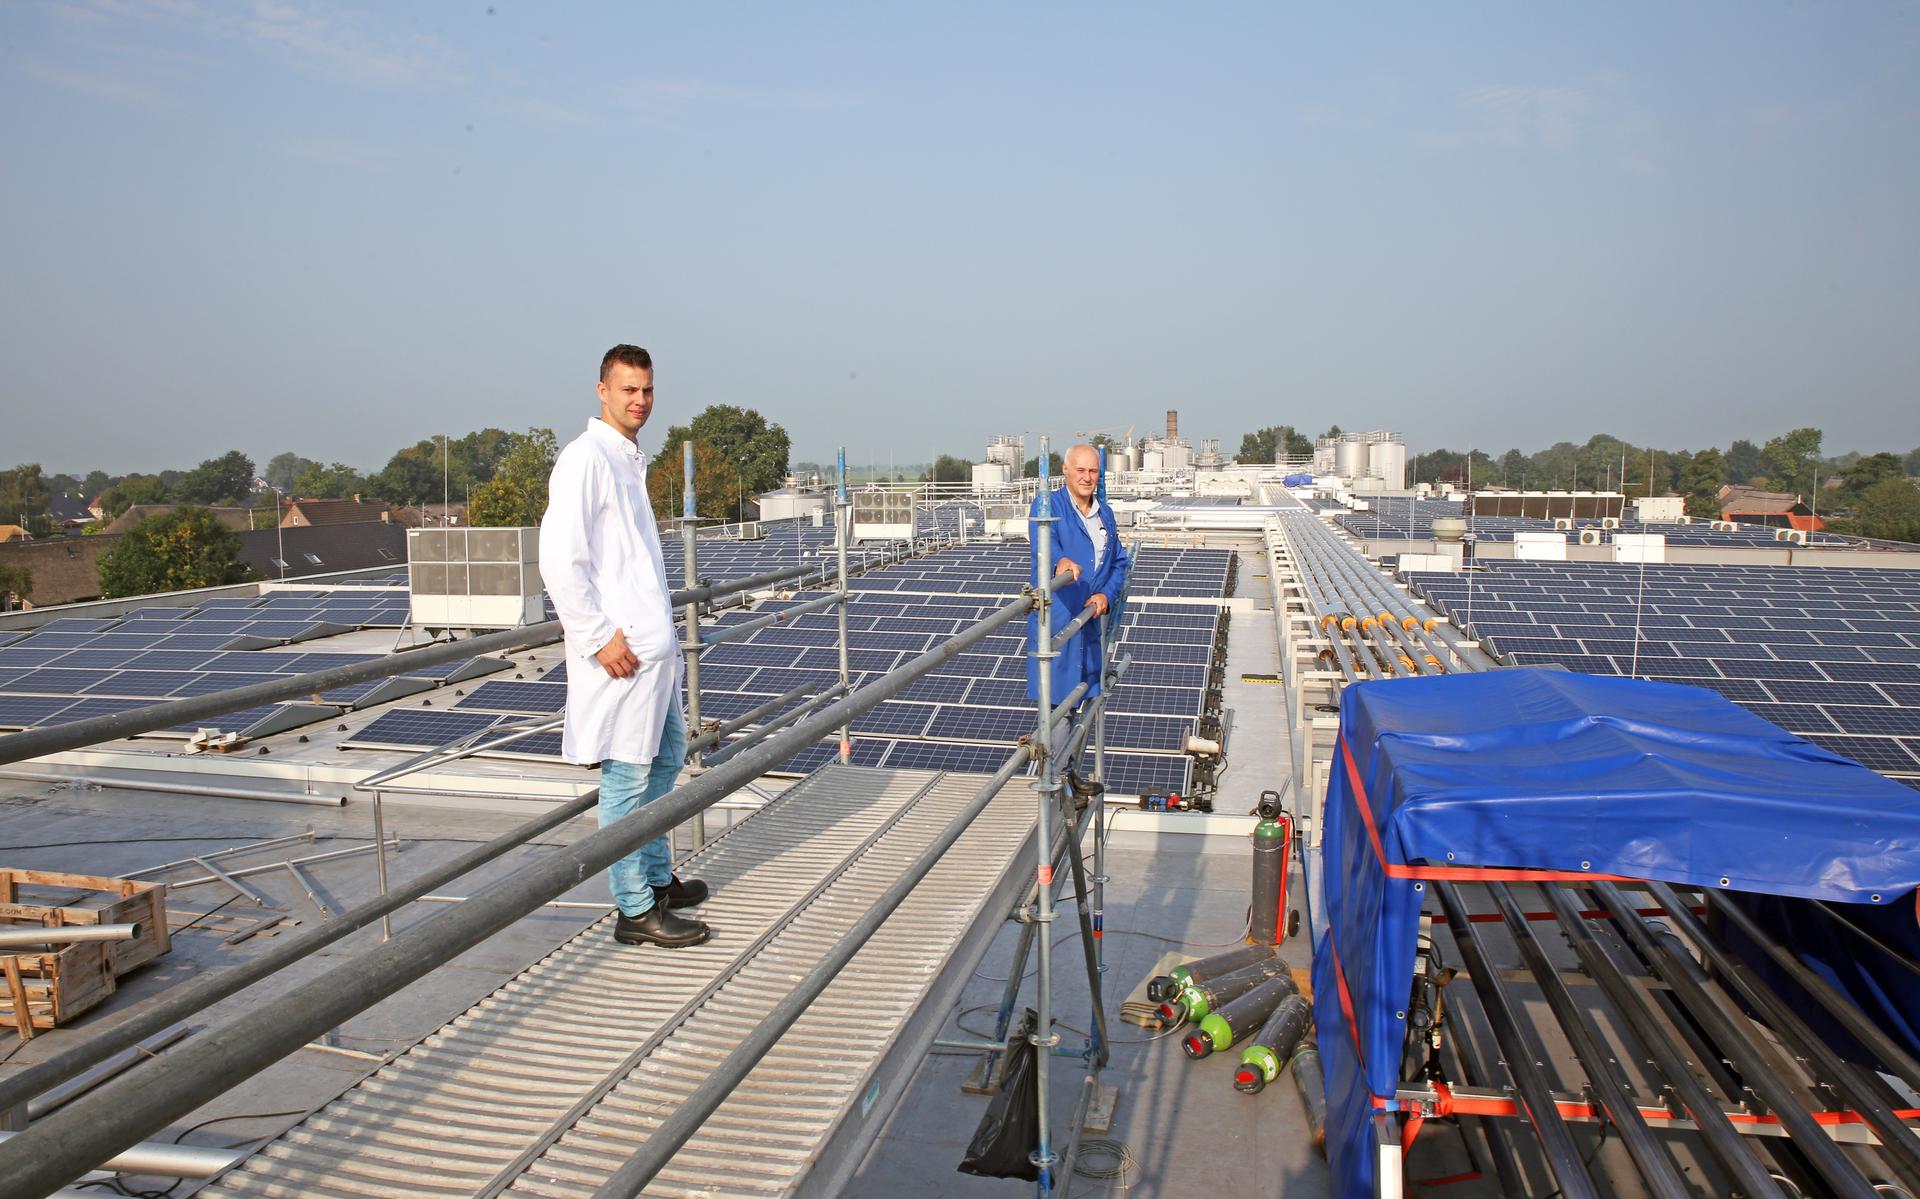 Op het dak van het enorme bedrijf in Rouveen liggen 2300 zonnepanelen, ook onderdeel van Rouveen Gewoon Duurzaam.